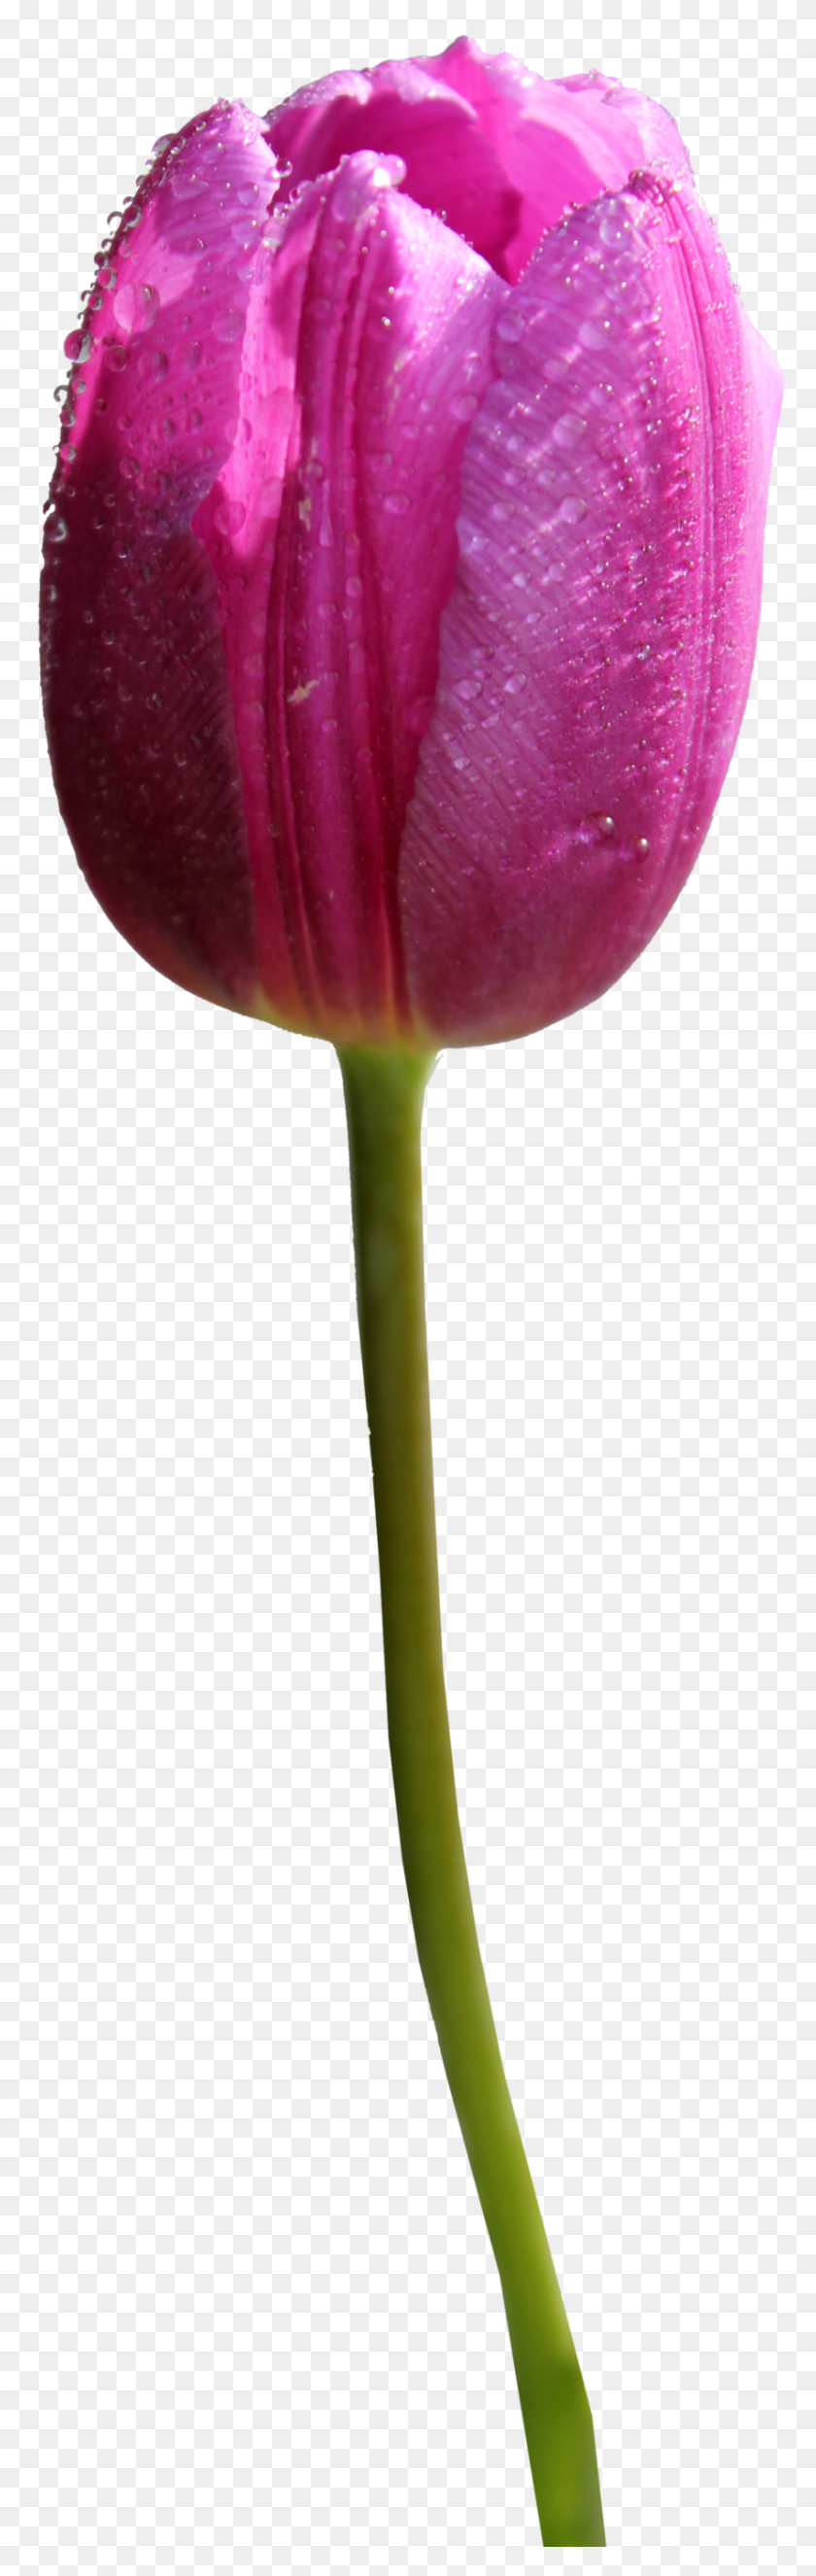 830x2758 Tulip Clipart Blanco Y Negro Gráficos De La Imagen De La Flor Botánica - Tulip Imágenes De Imágenes Prediseñadas